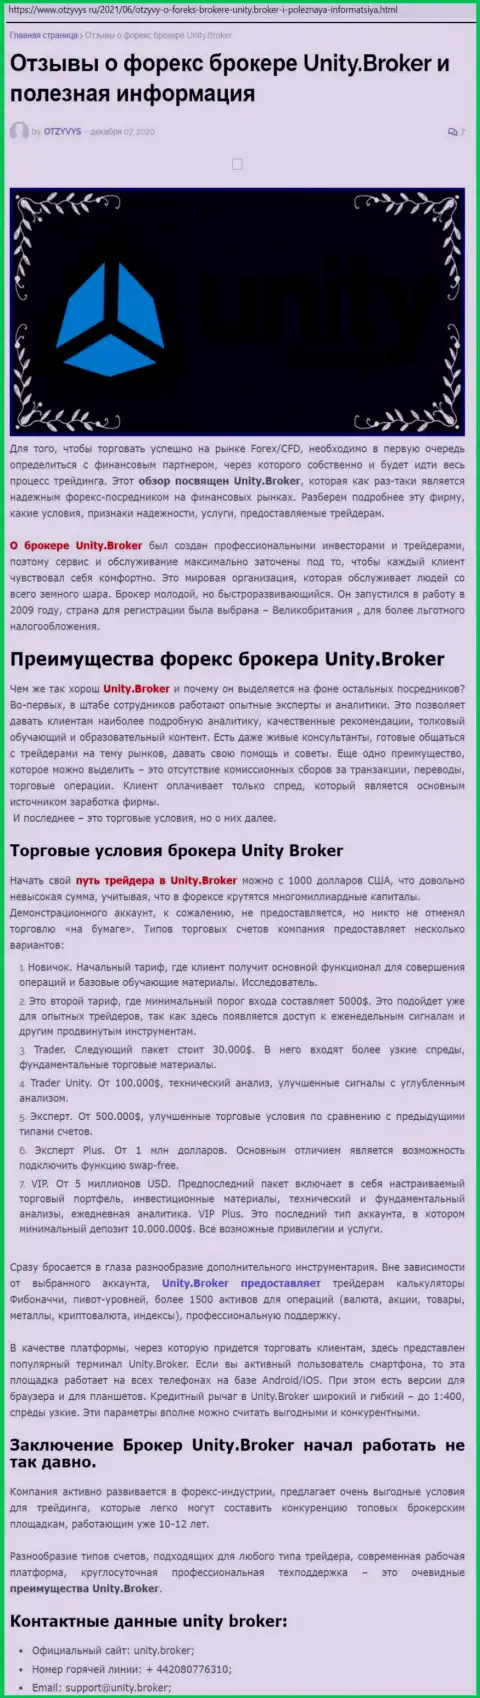 Публикация о FOREX-компании Unity Broker на сайте Otzyvys Ru